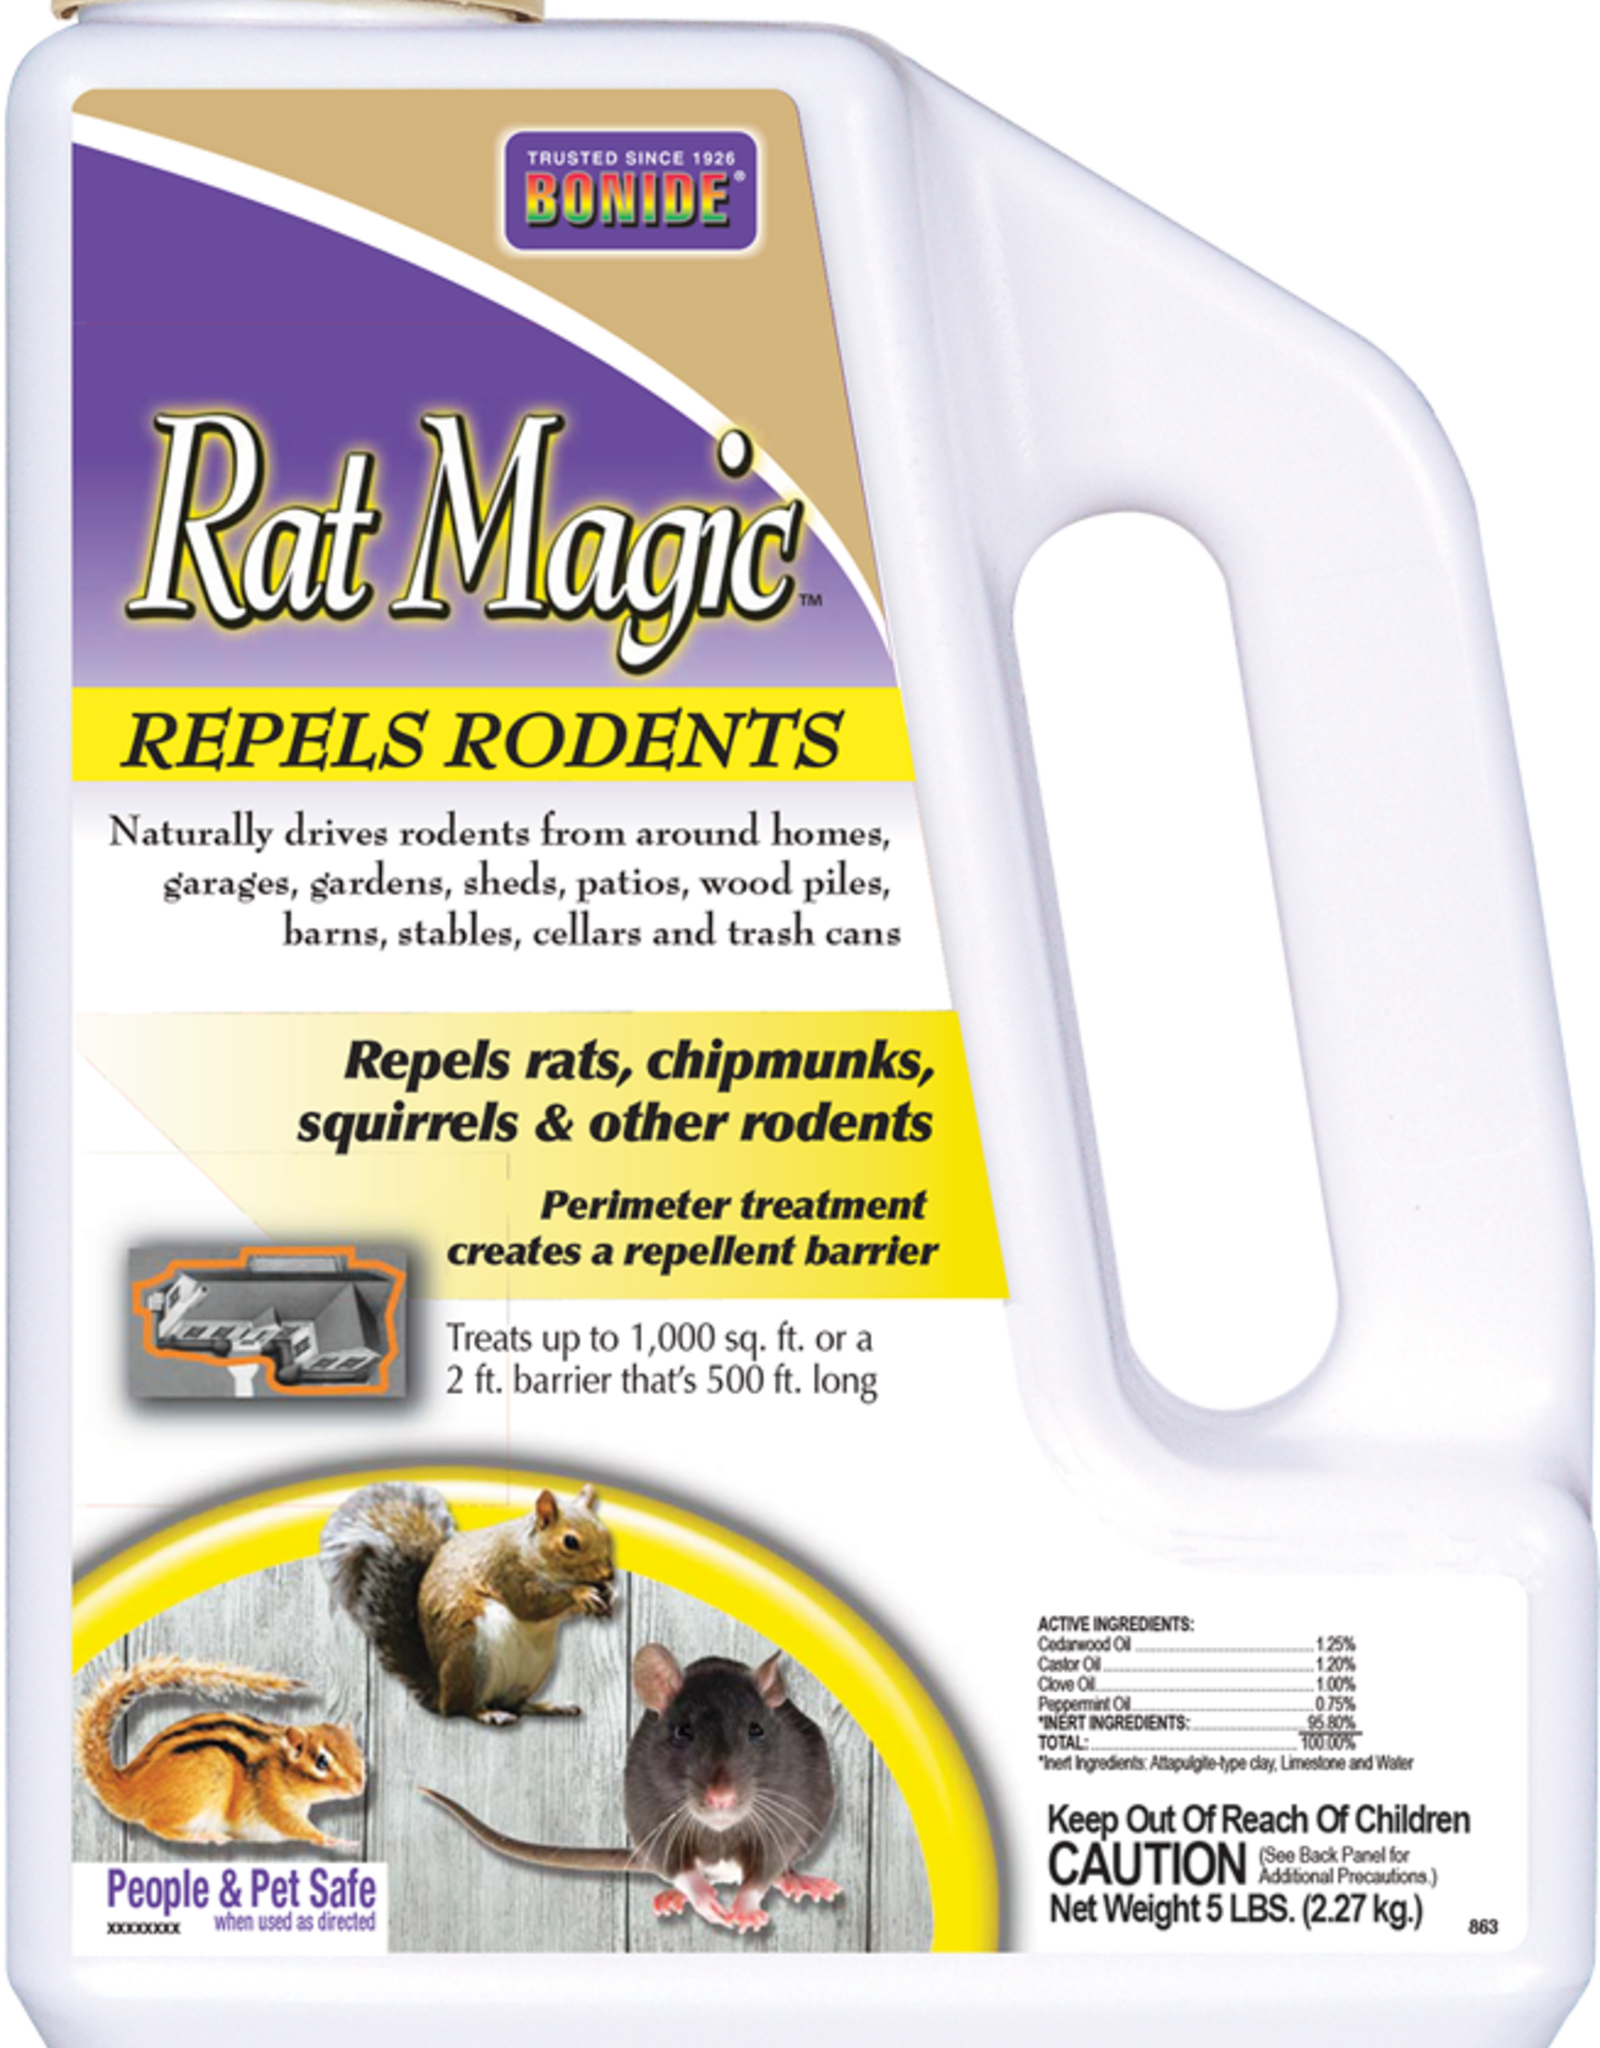 BONIDE PRODUCTS-ROXIDE BONIDE RAT MAGIC 5LBS